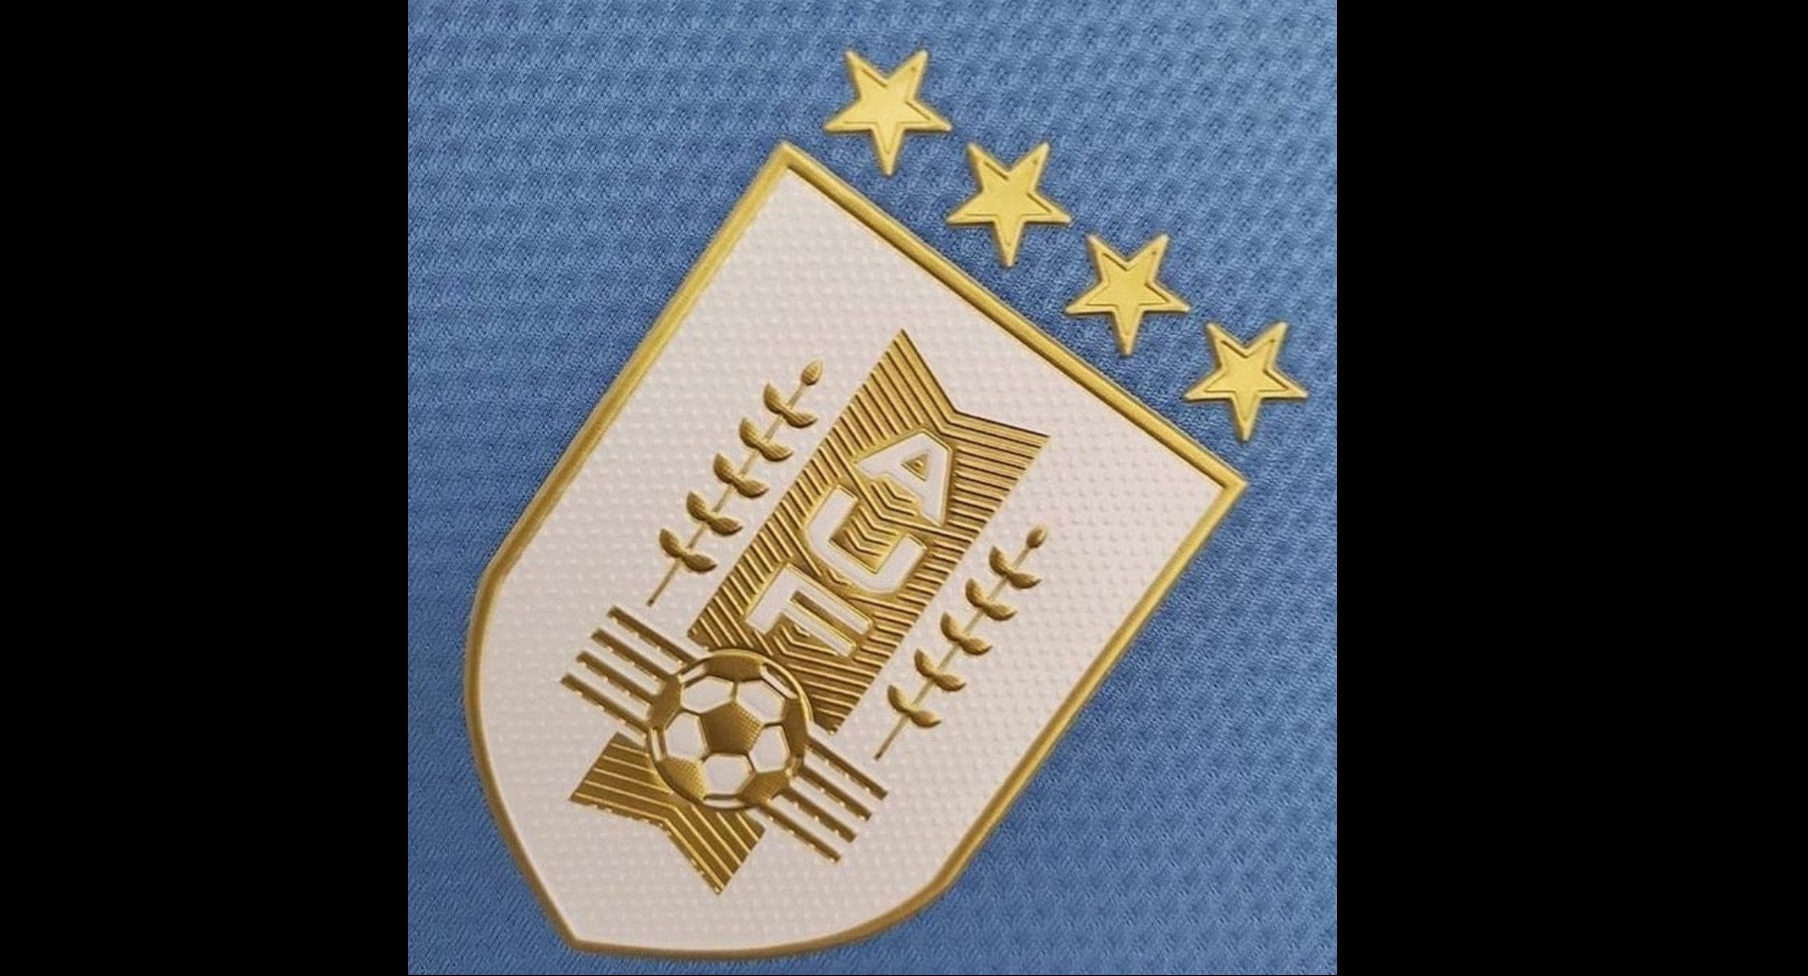 Por qué Uruguay usa cuatro estrellas en su escudo? - Olé